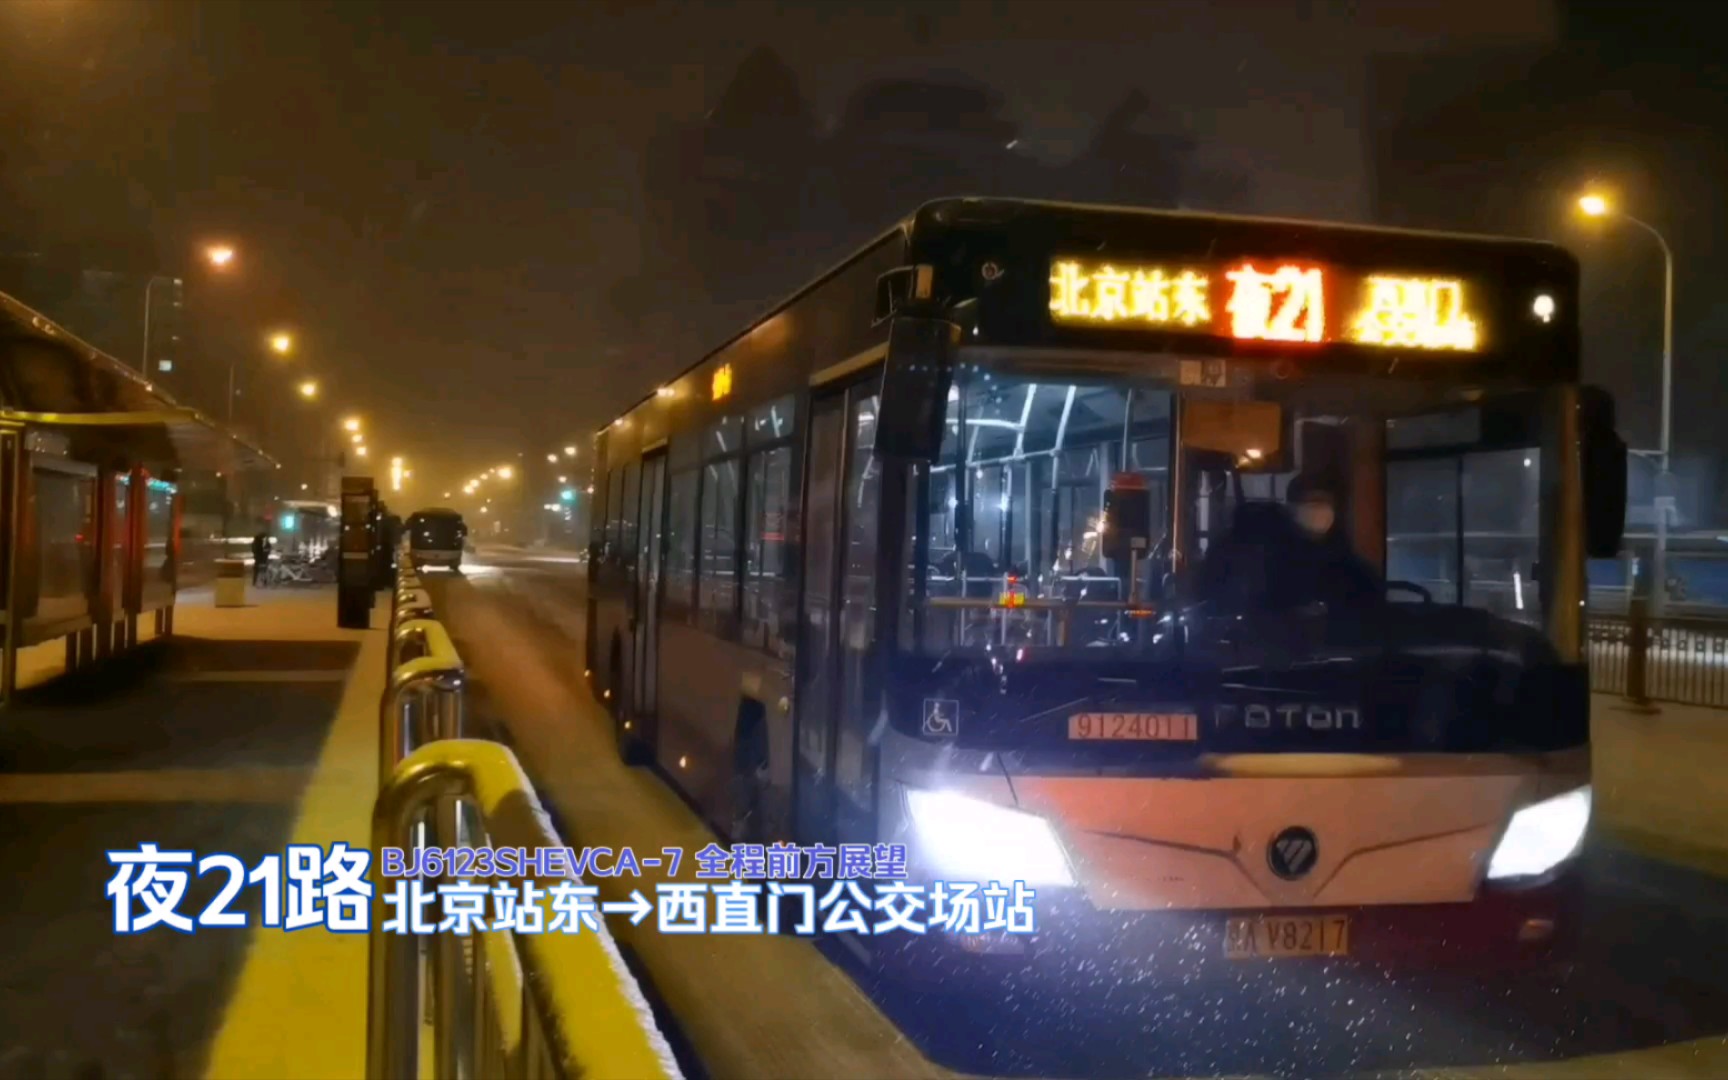 [早期夜车夜间飙车]北京公交夜21路pov(全程倍速前方展望丨bj6123she